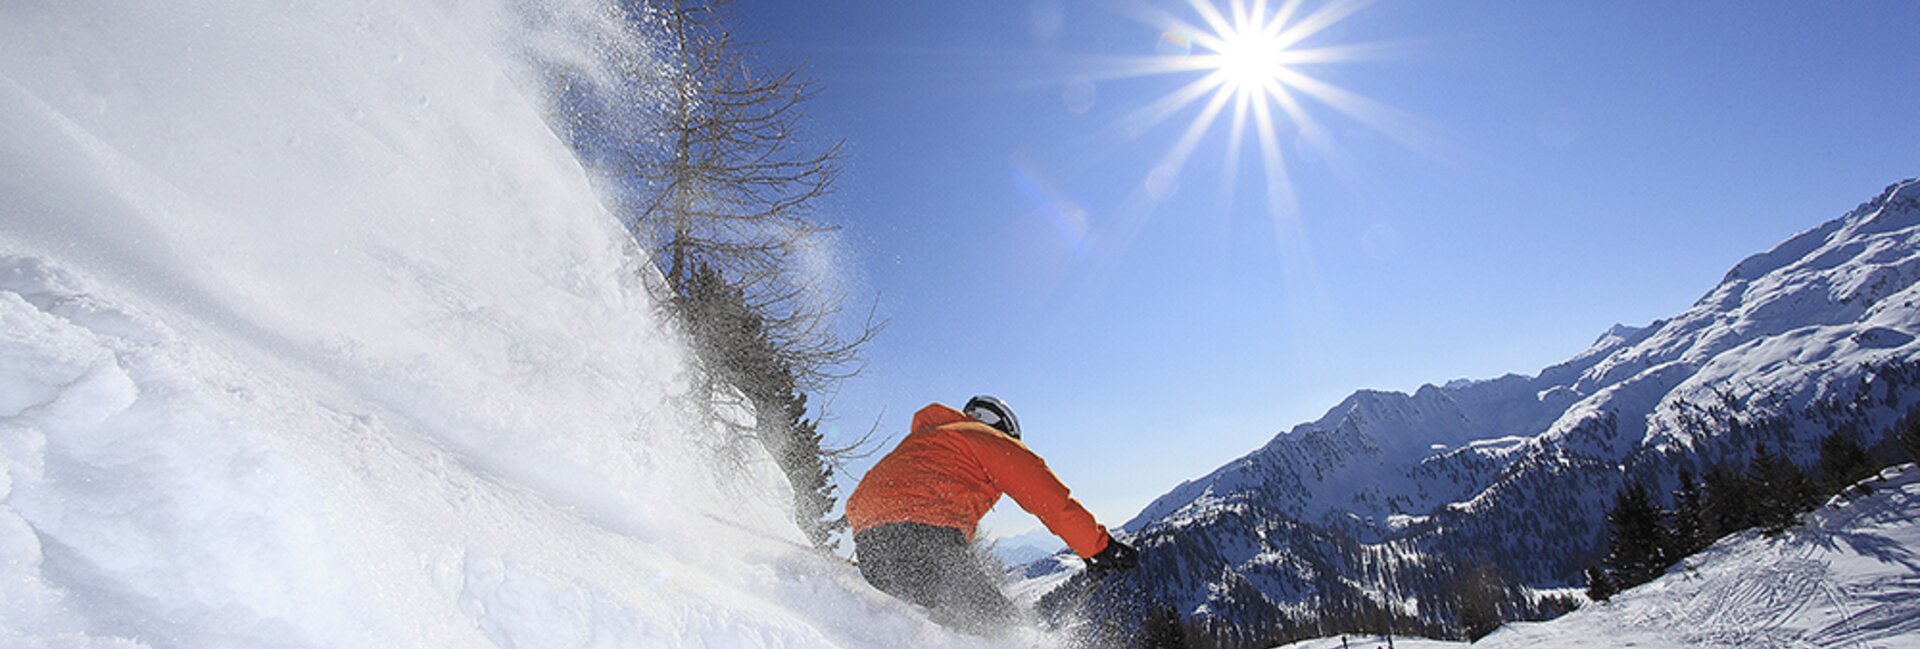 Marilleva ski resort: skiing in the Alps